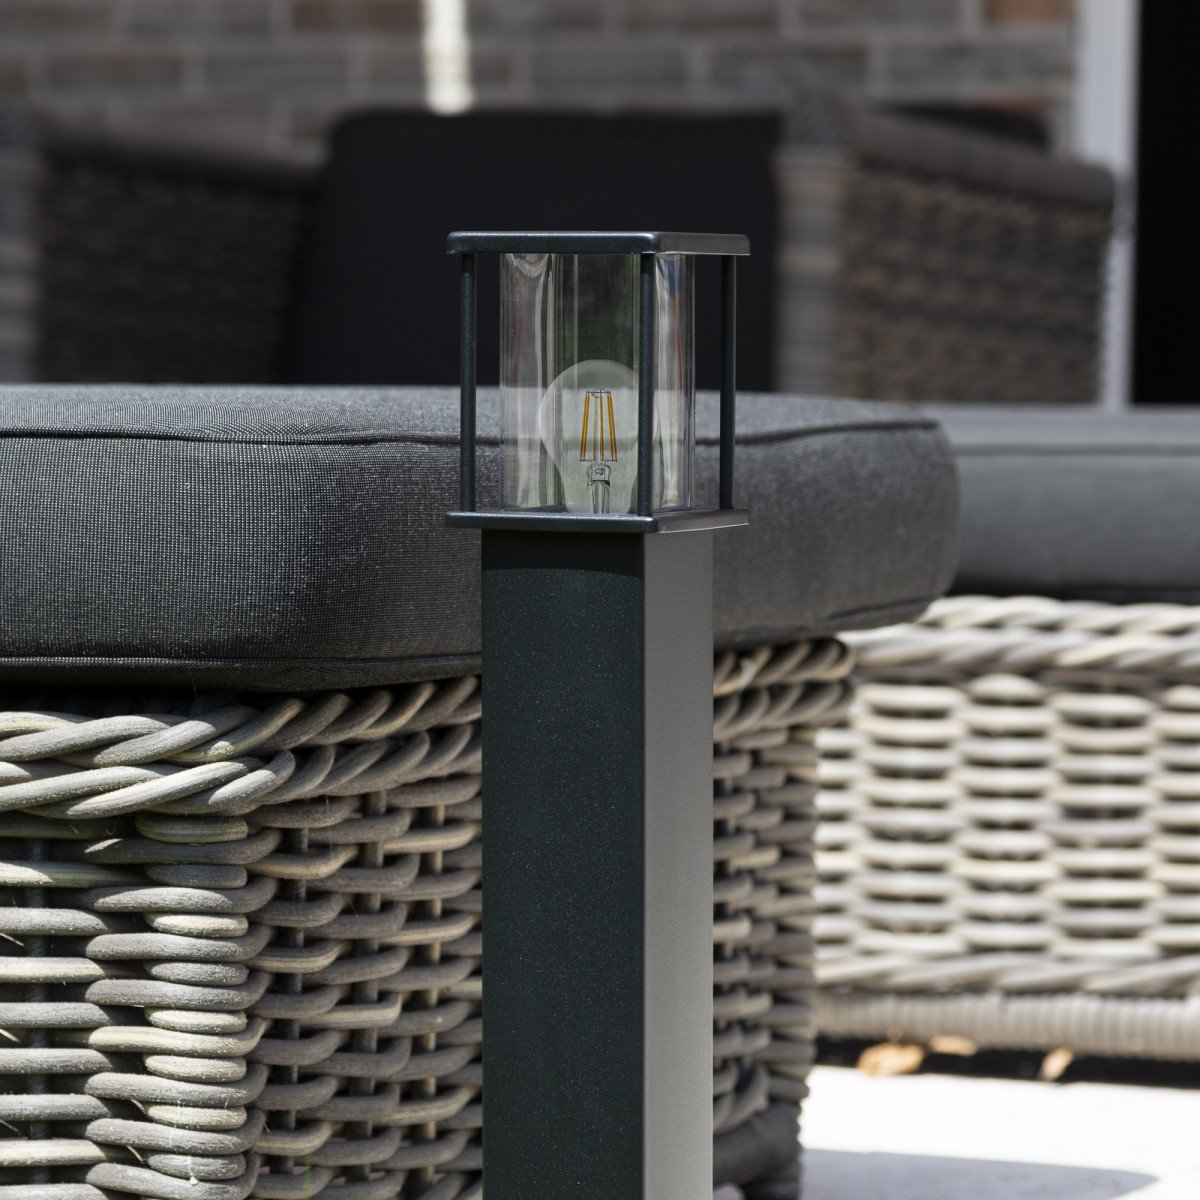 Zwarte tuinlamp 70 cm hoog strak design verlichtingsarmatuur voor buiten vierkante paal met box design lantaarnkap met heldere beglazing rondom lichtval